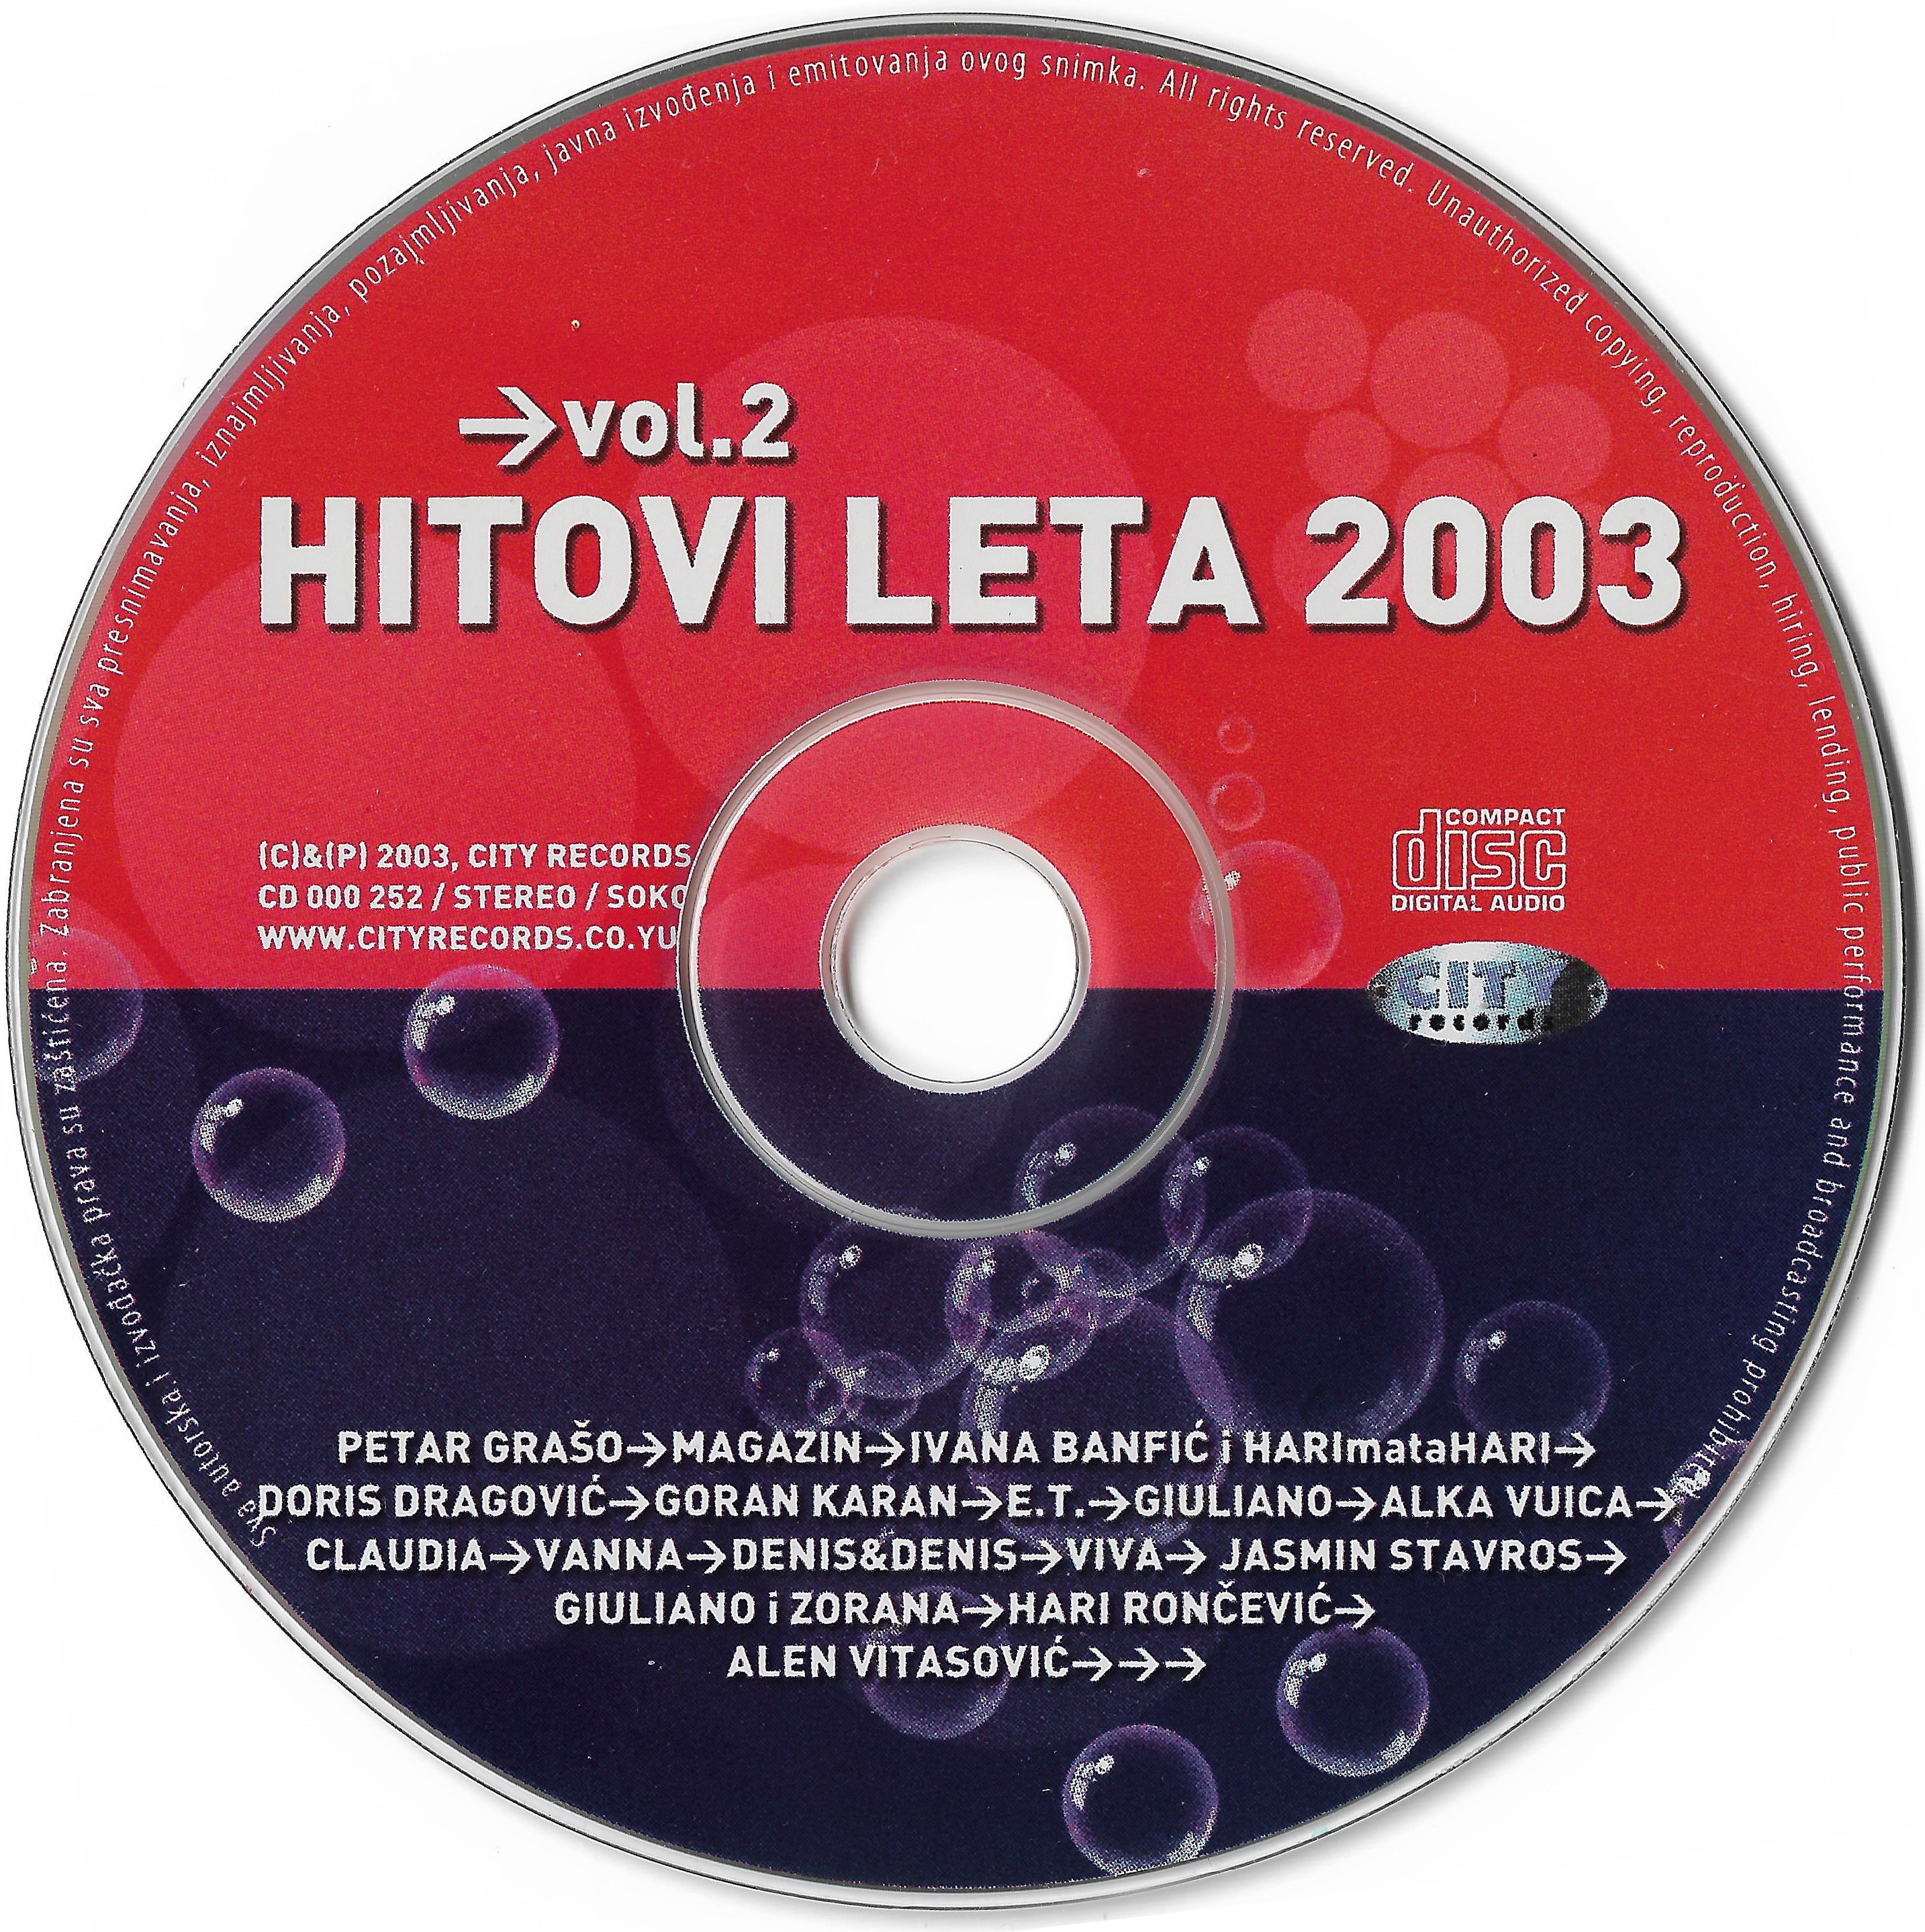 HL 2003 Vol 2 5